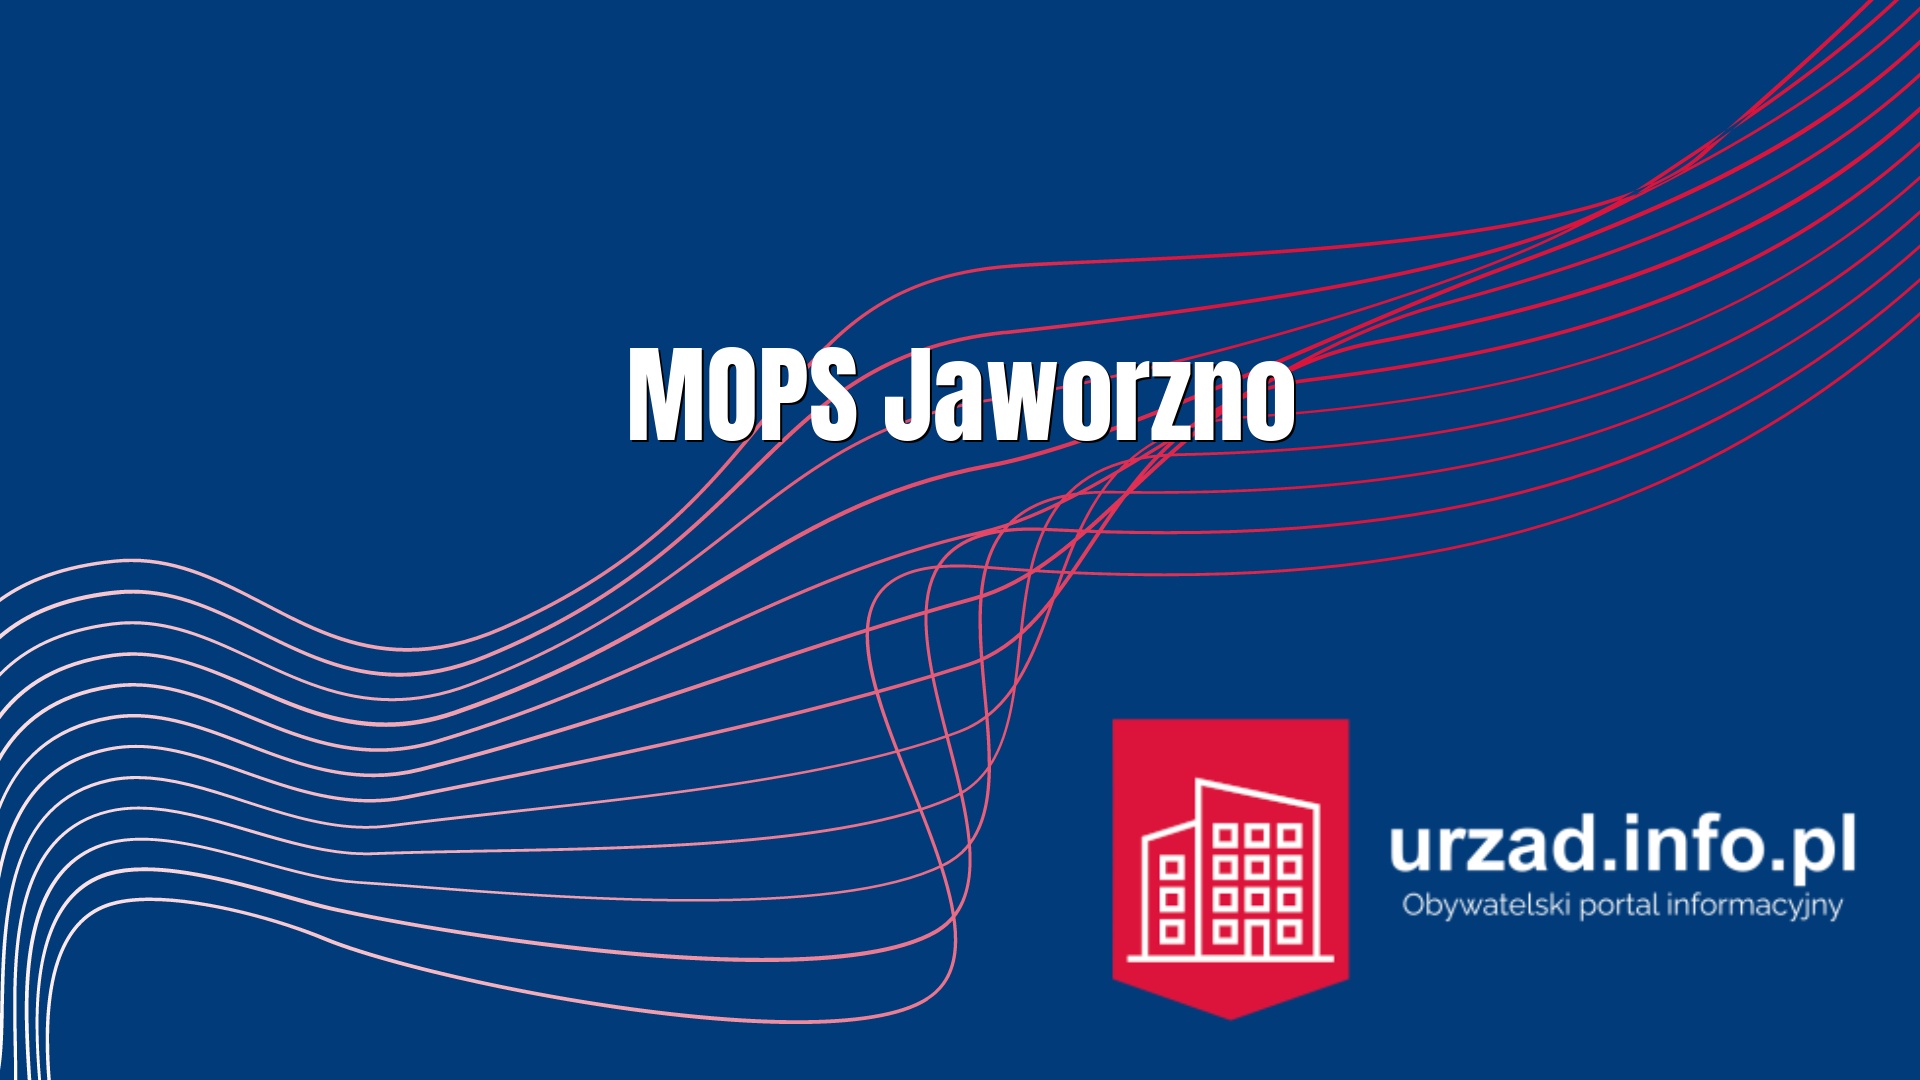 MOPS Jaworzno - Miejski Ośrodek Pomocy Społecznej w Jaworznie